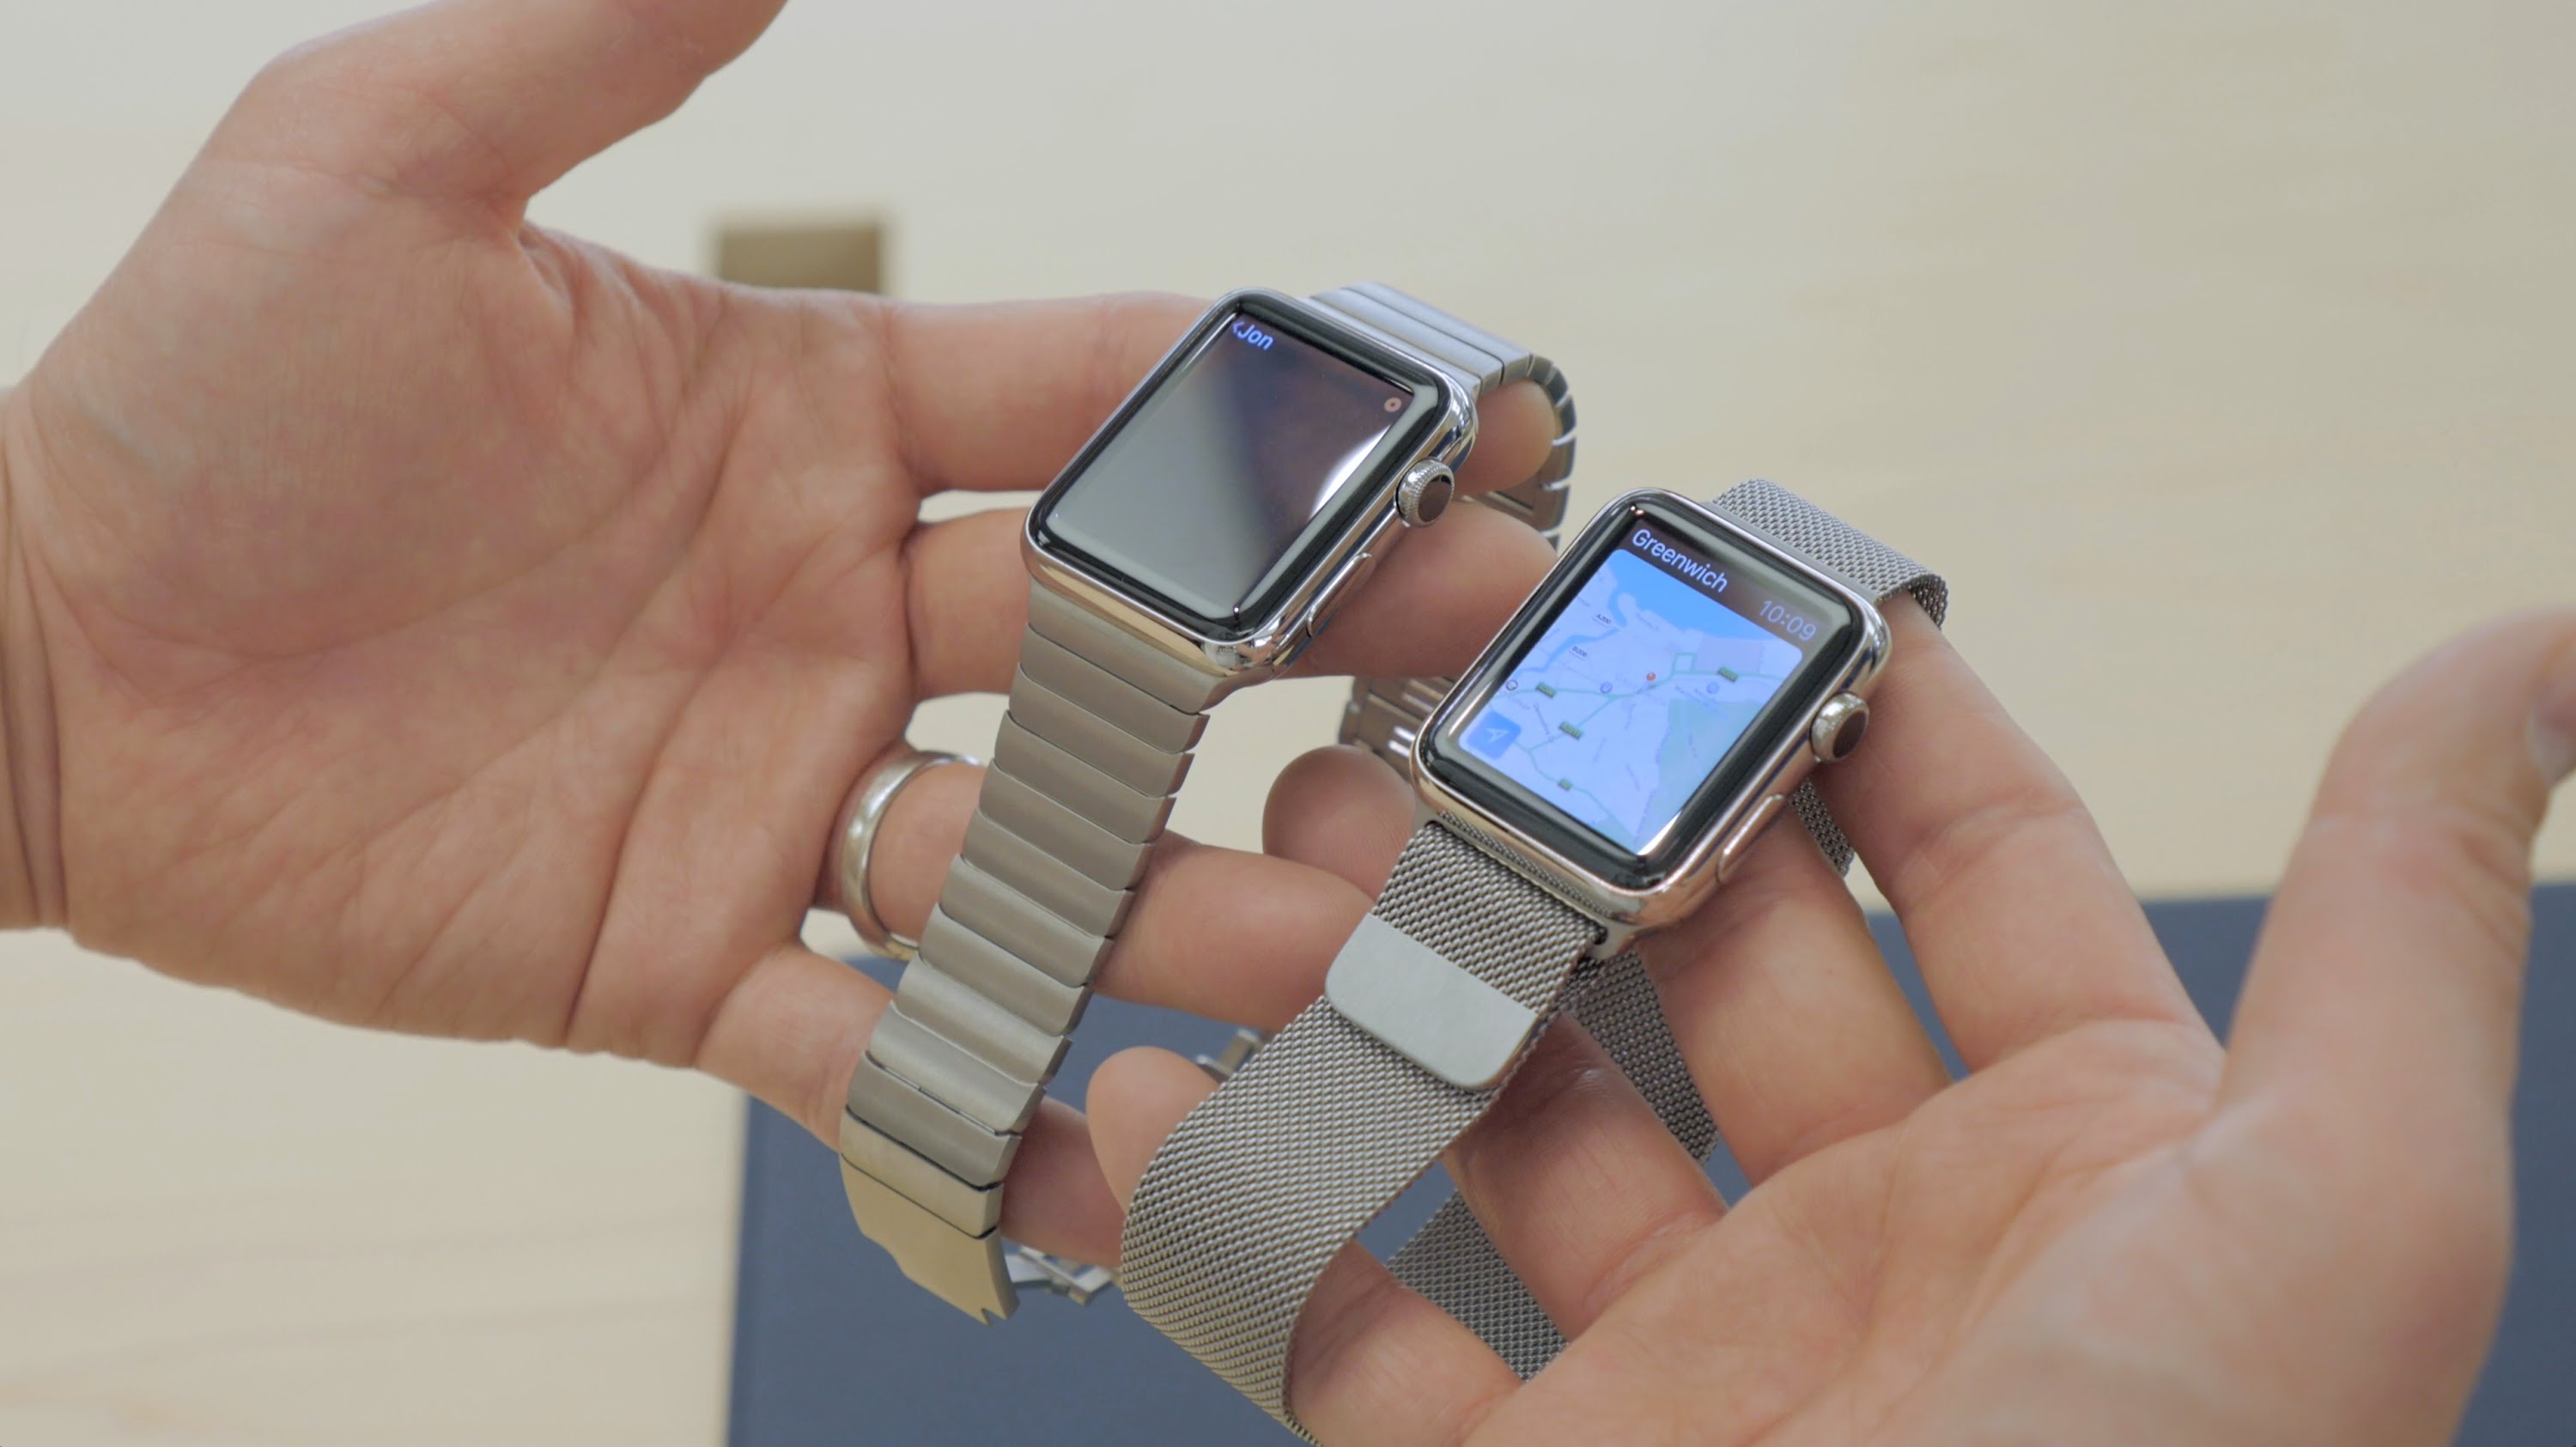 Series 3 42mm. Apple watch Series 3 38mm. Apple watch 3 38 mm. Apple watch 1 38 mm. Apple watch 38mm vs 42mm.